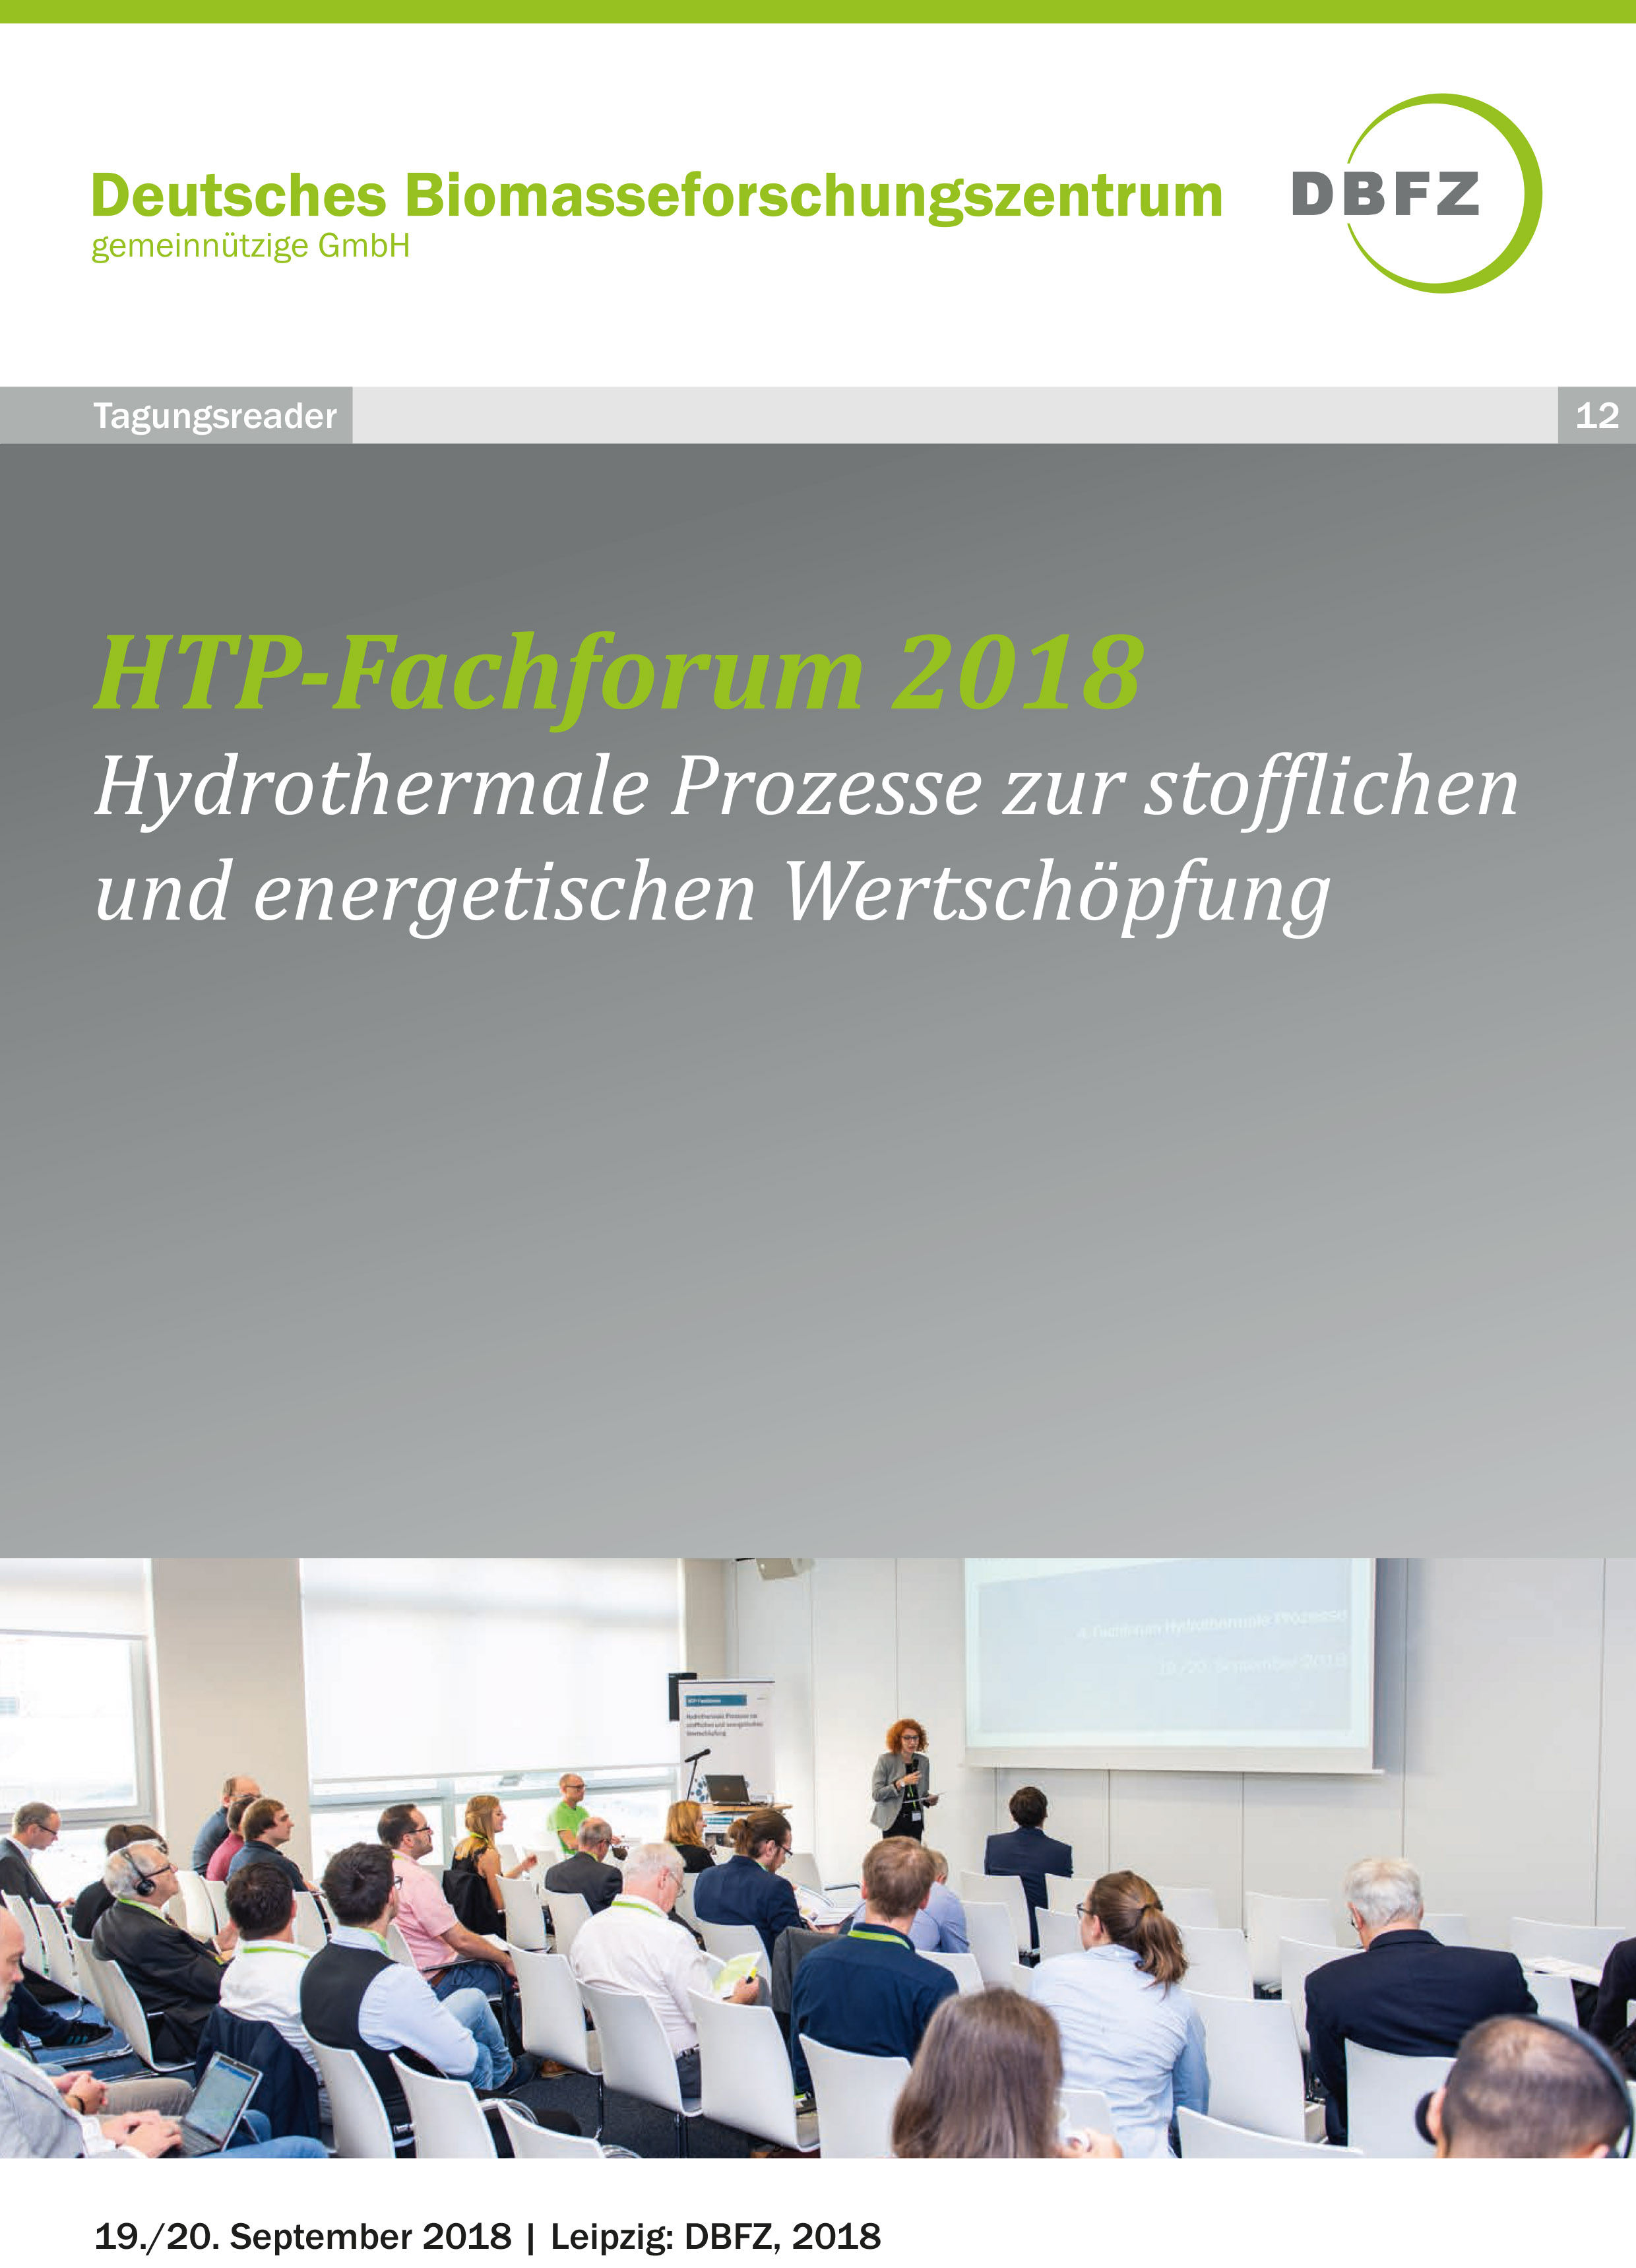 4. HTP-Fachforum 2018